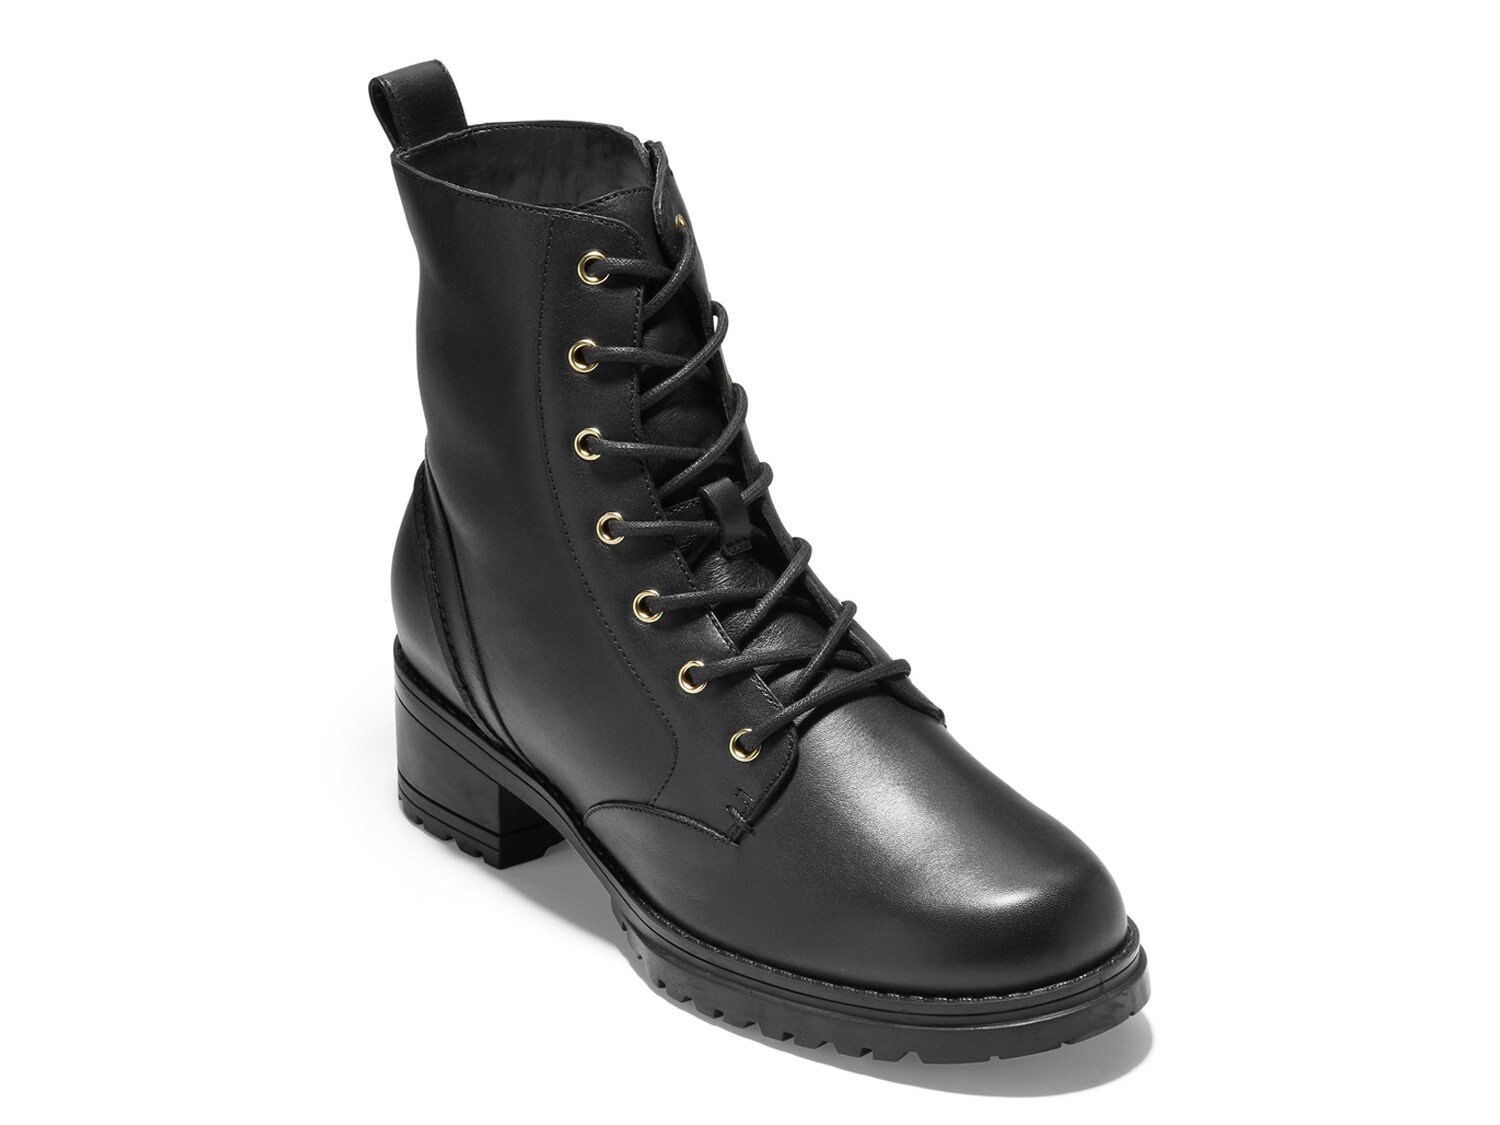 ботинки camea waterproof combat boot cole haan кожа Ботинки Cole Haan Camea, черный